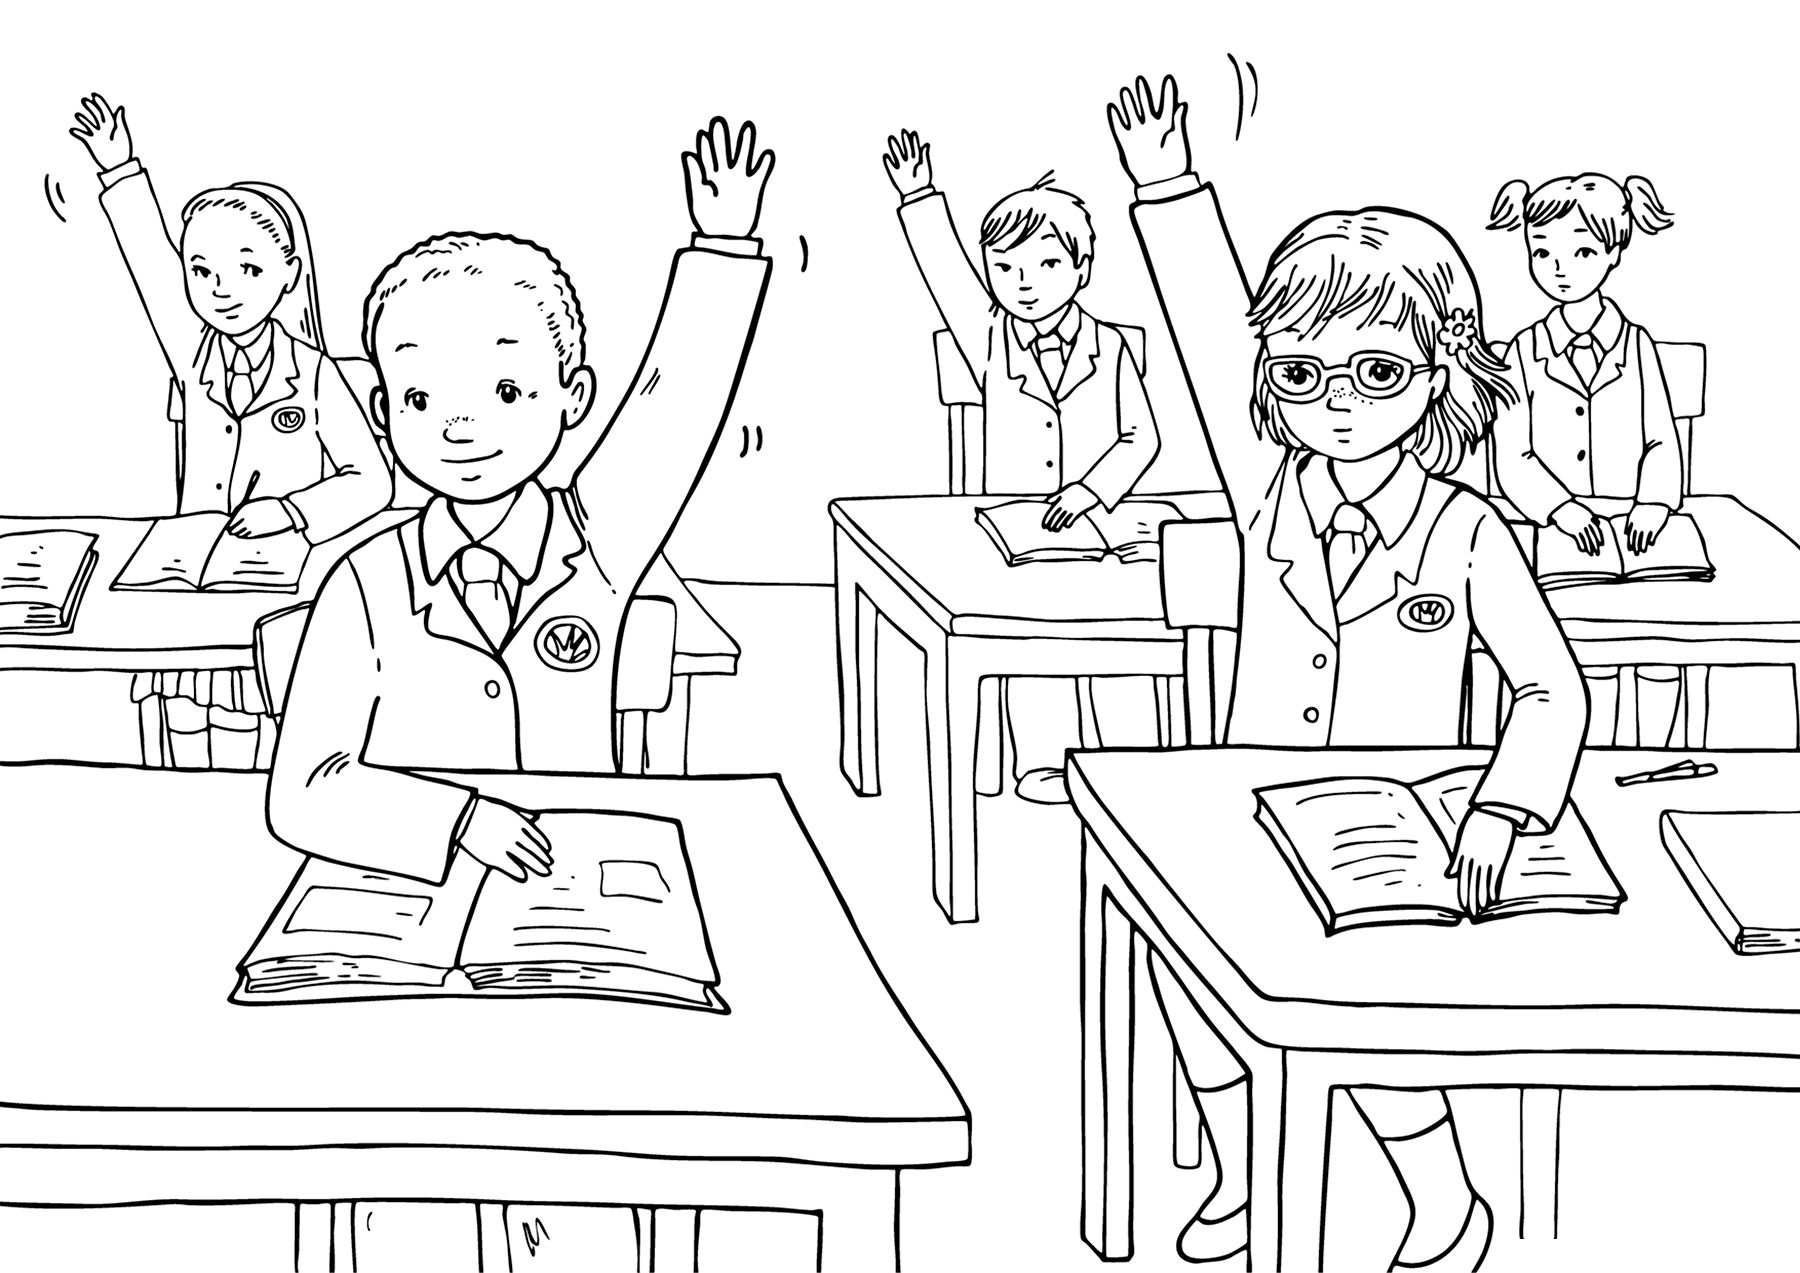 рисунок дети в школе за партами